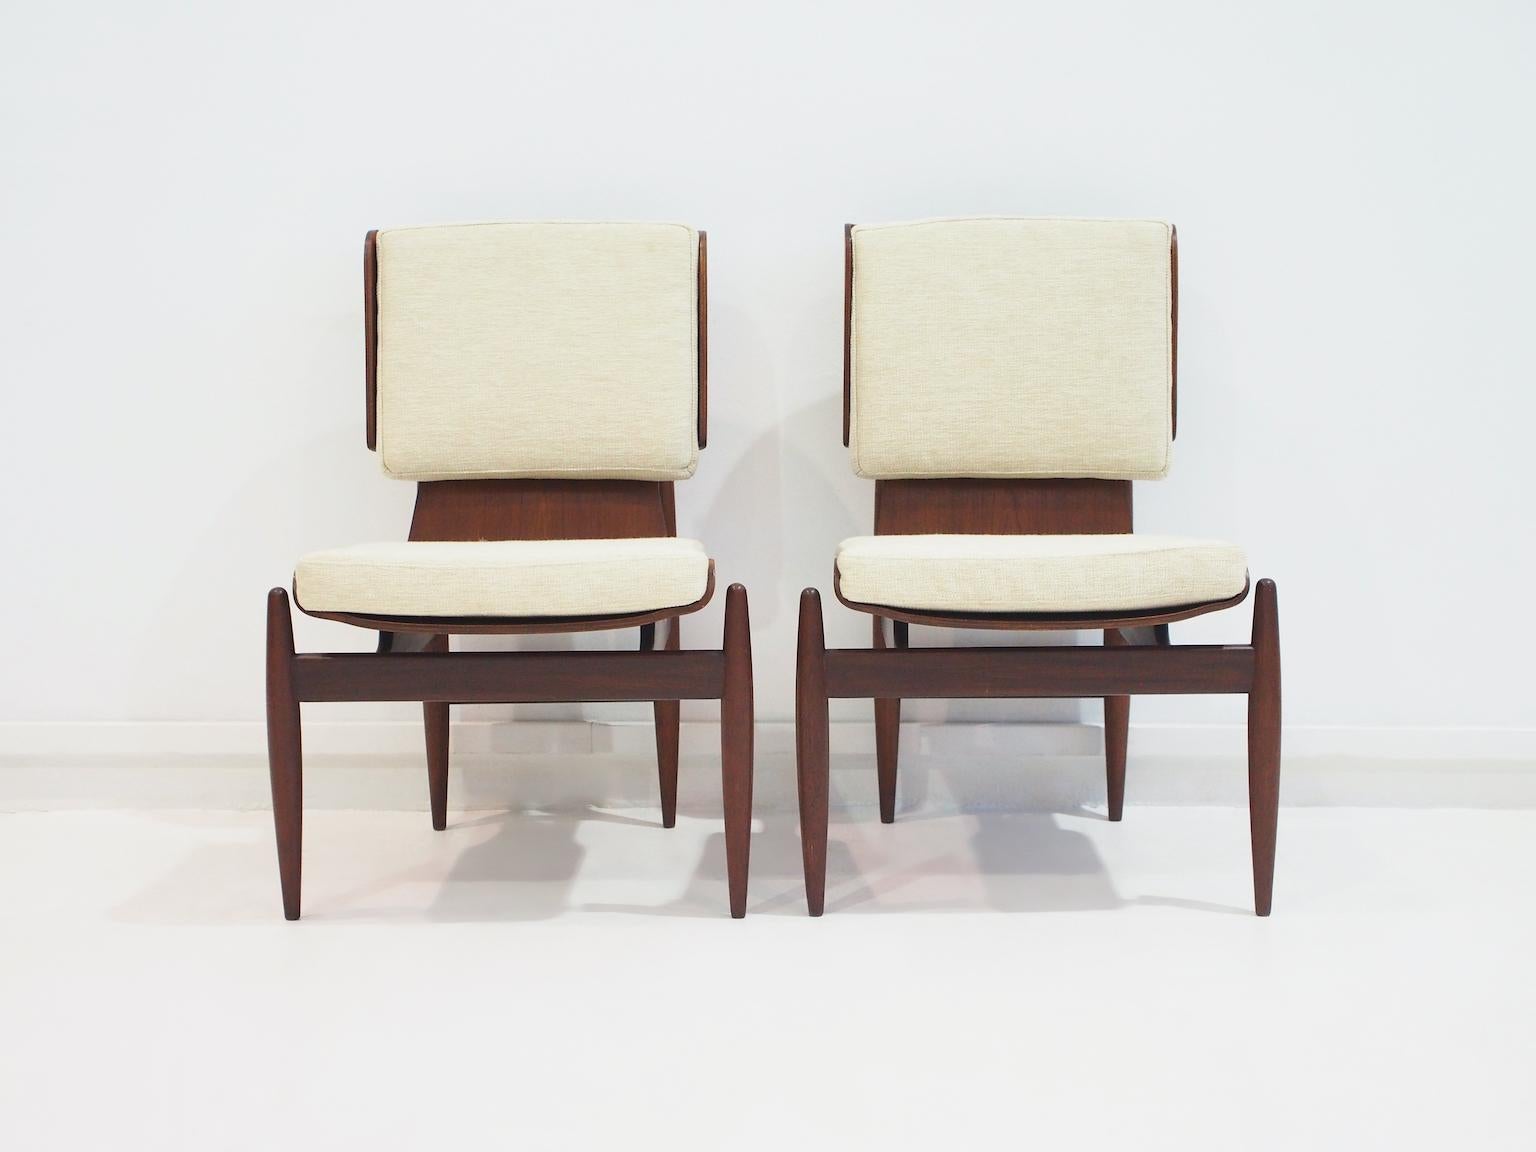 Paire de chaises d'appoint magnifiquement travaillées par Barovero dans les années 50. Les chaises sont dotées d'une structure incurvée en contreplaqué qui semble 